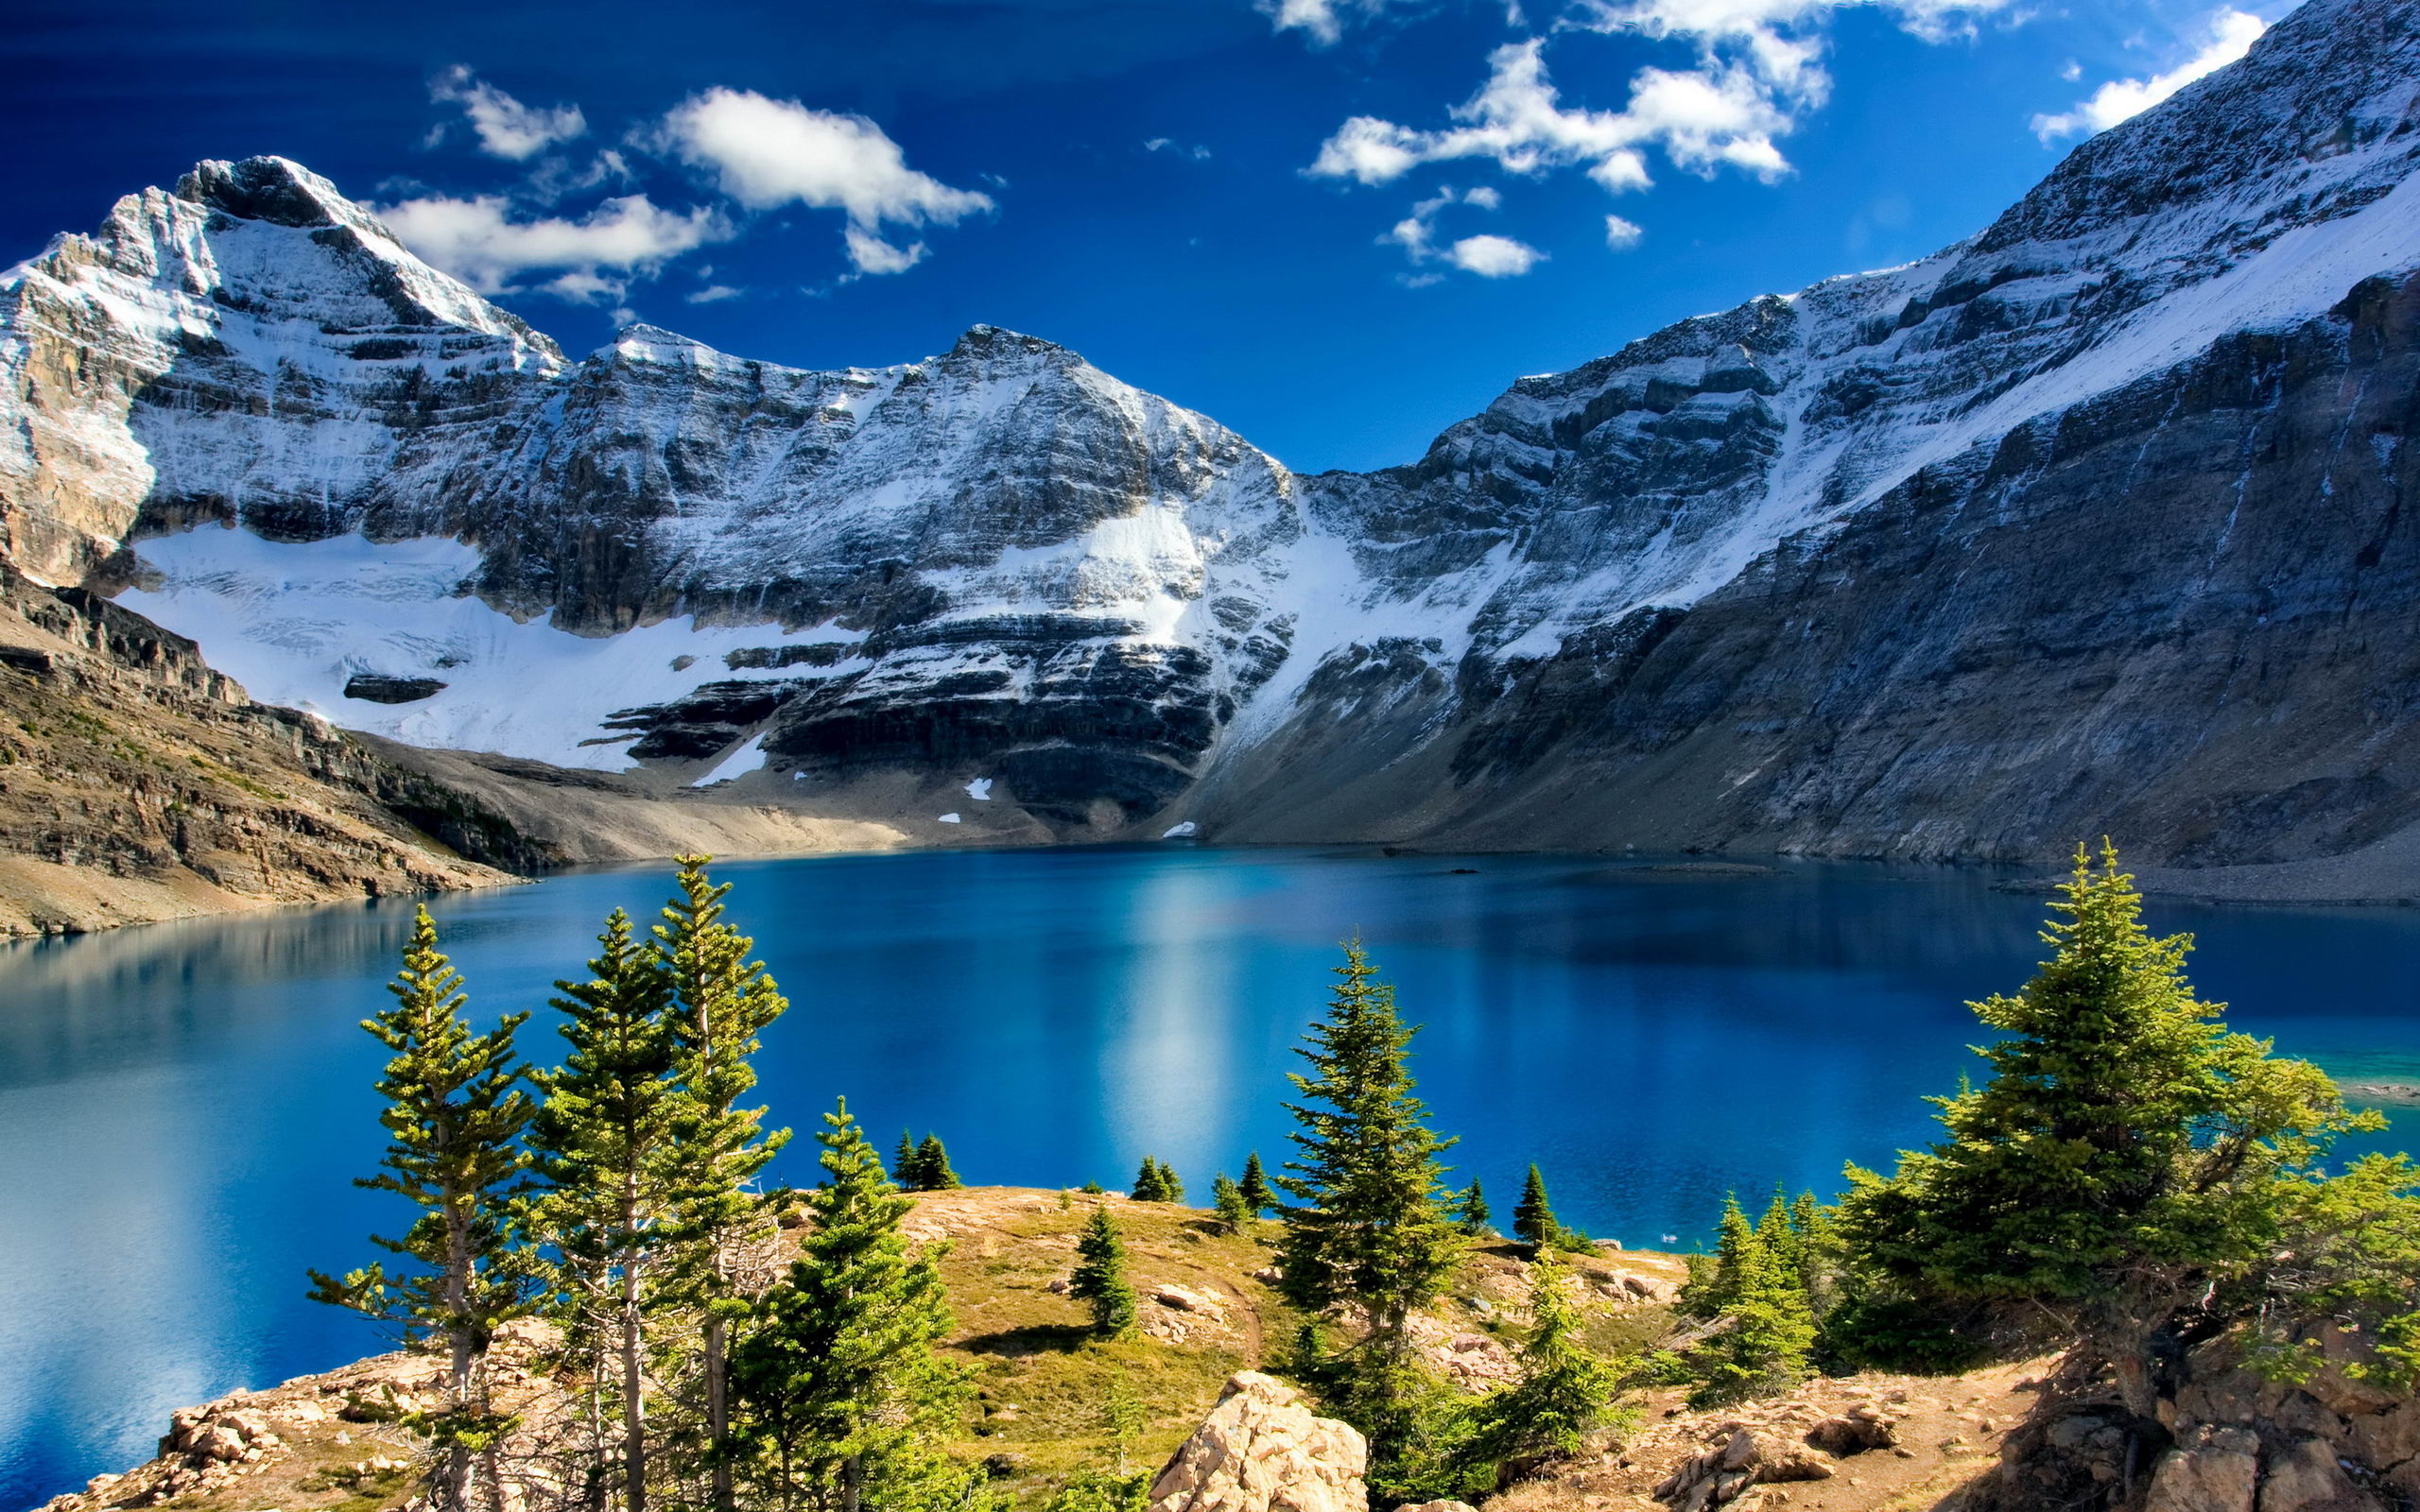 sfondi gratis,montagna,paesaggio naturale,natura,larice larix lyalliisubalpine,lago glaciale